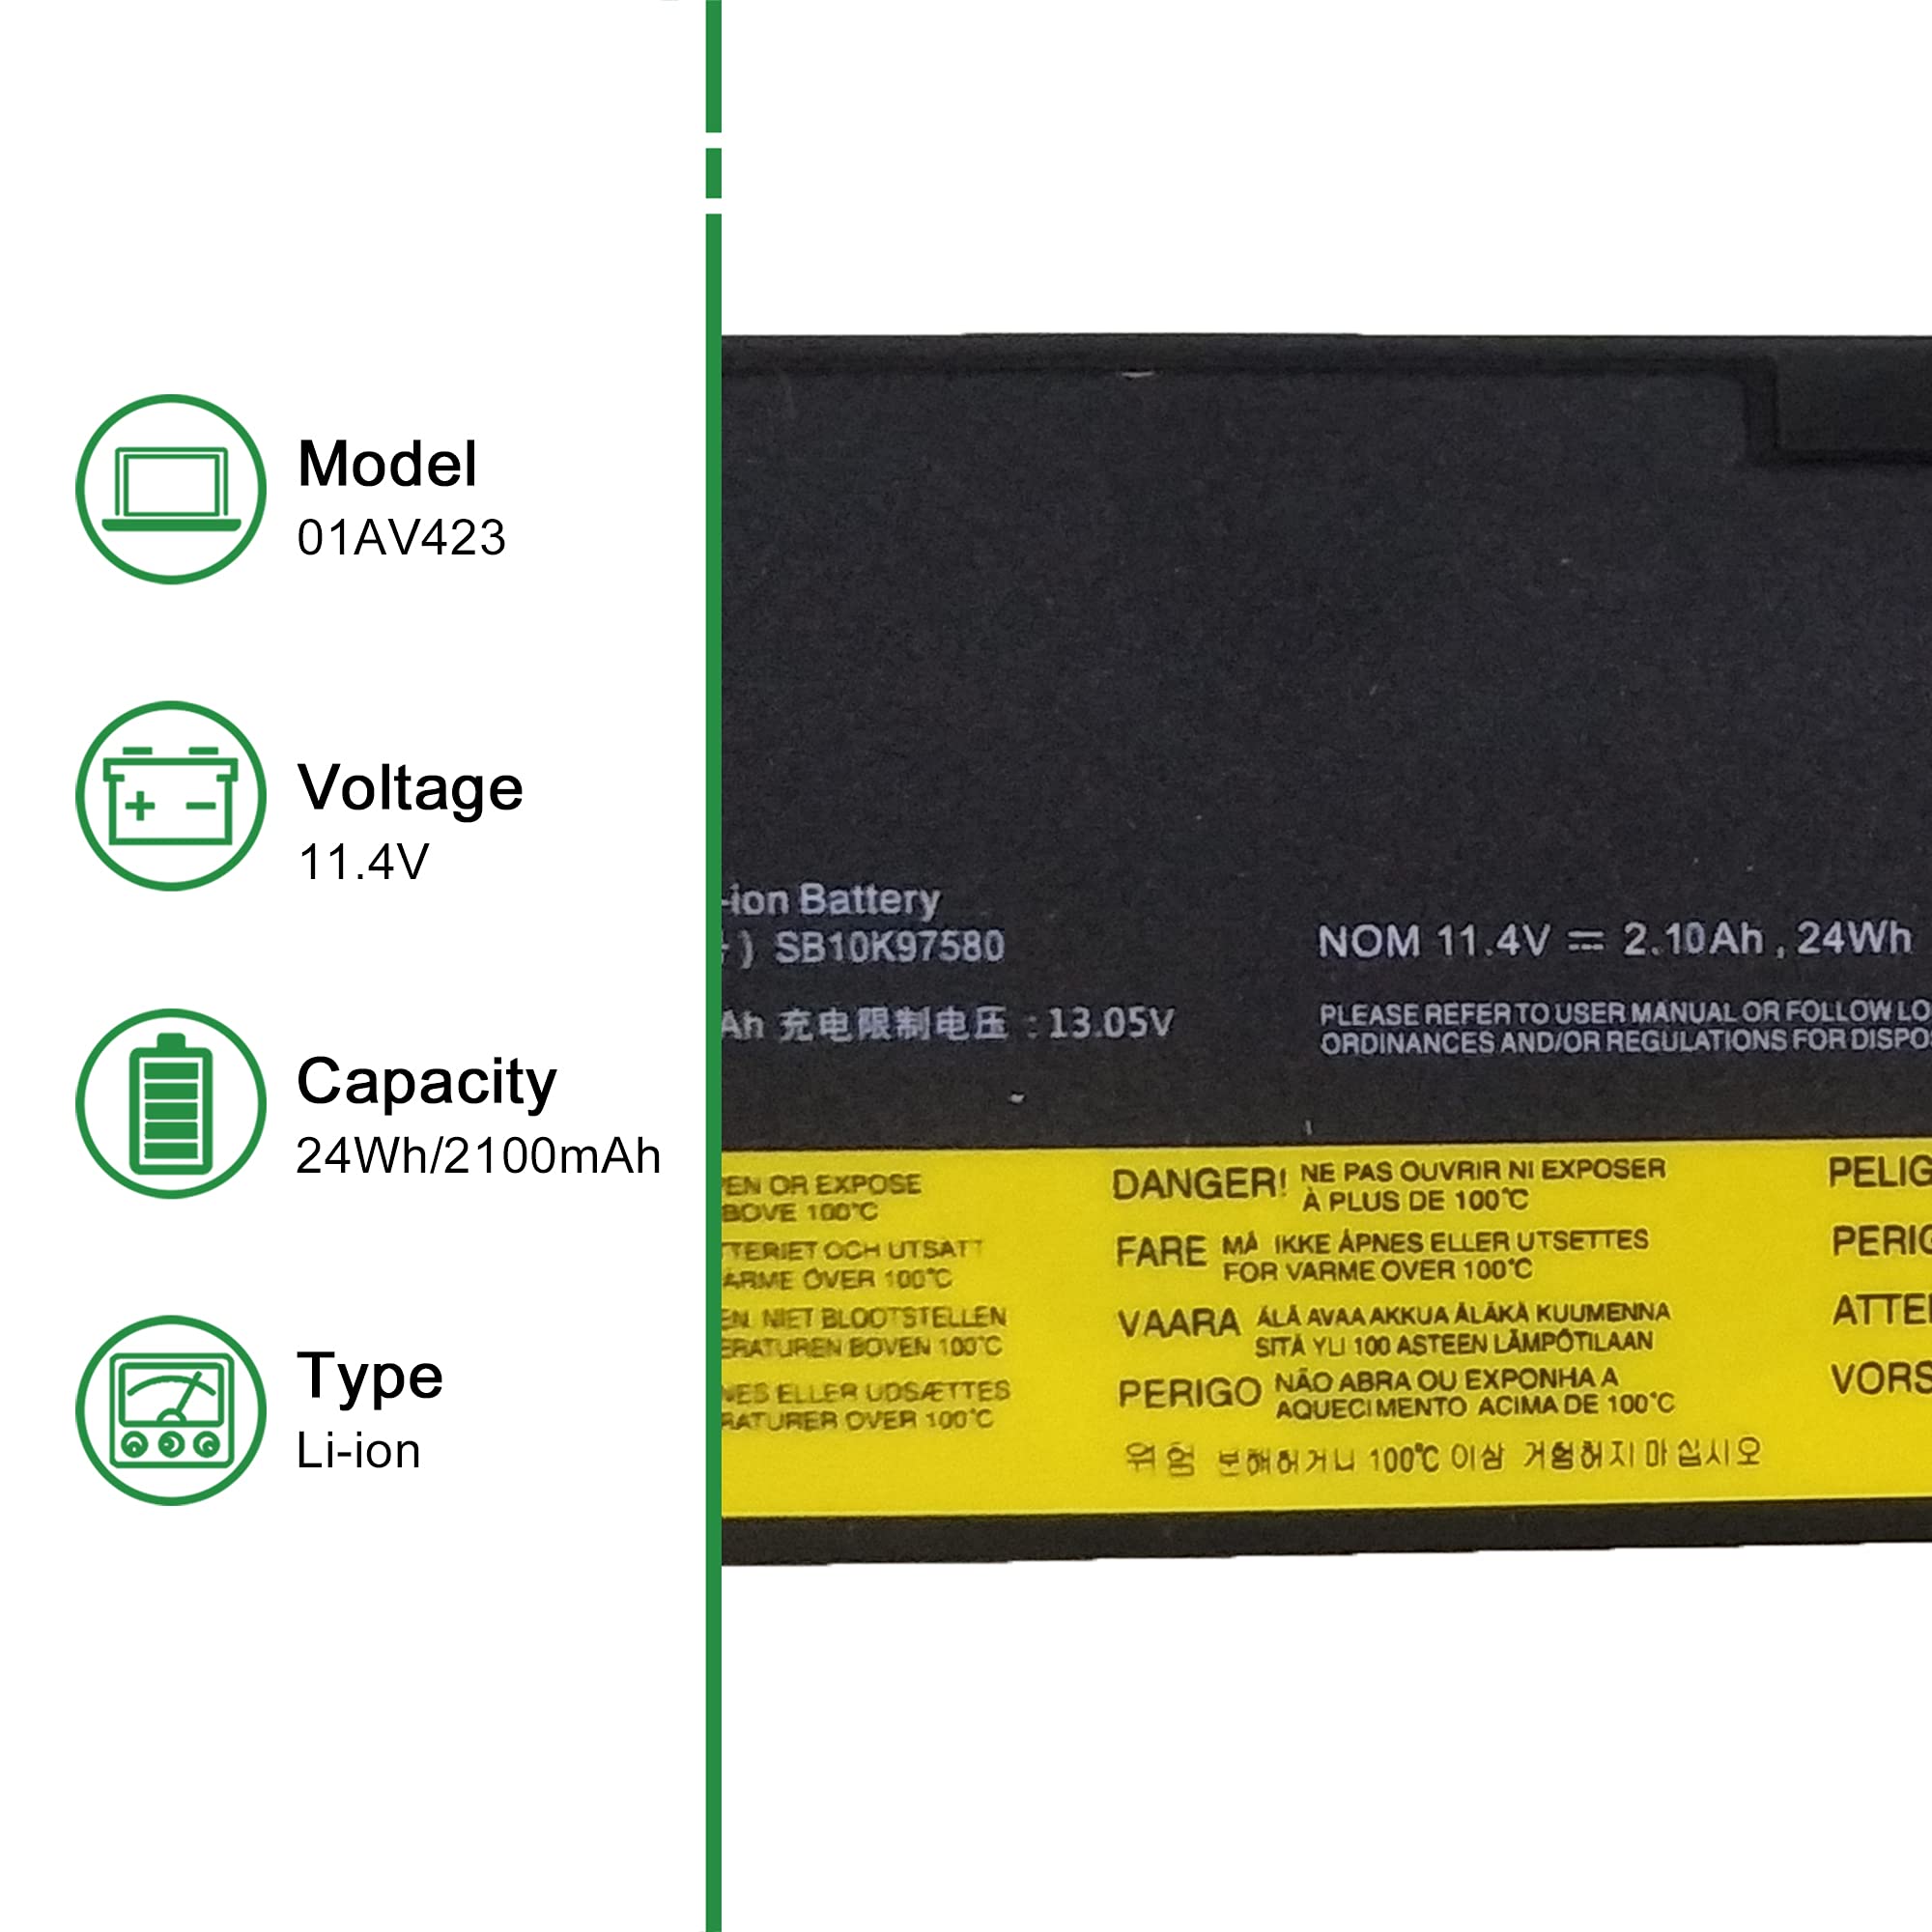 JIAZIJIA 01AV423 SB10K97580 Laptop Battery Replacement for Lenovo ThinkPad T470 T480 A475 A485 T570 T580 P51S P52S TP25 Series 61 4X50M08810 01AV422 SB10K97579 01AV424 01AV452 01AV490 11.4V 24Wh